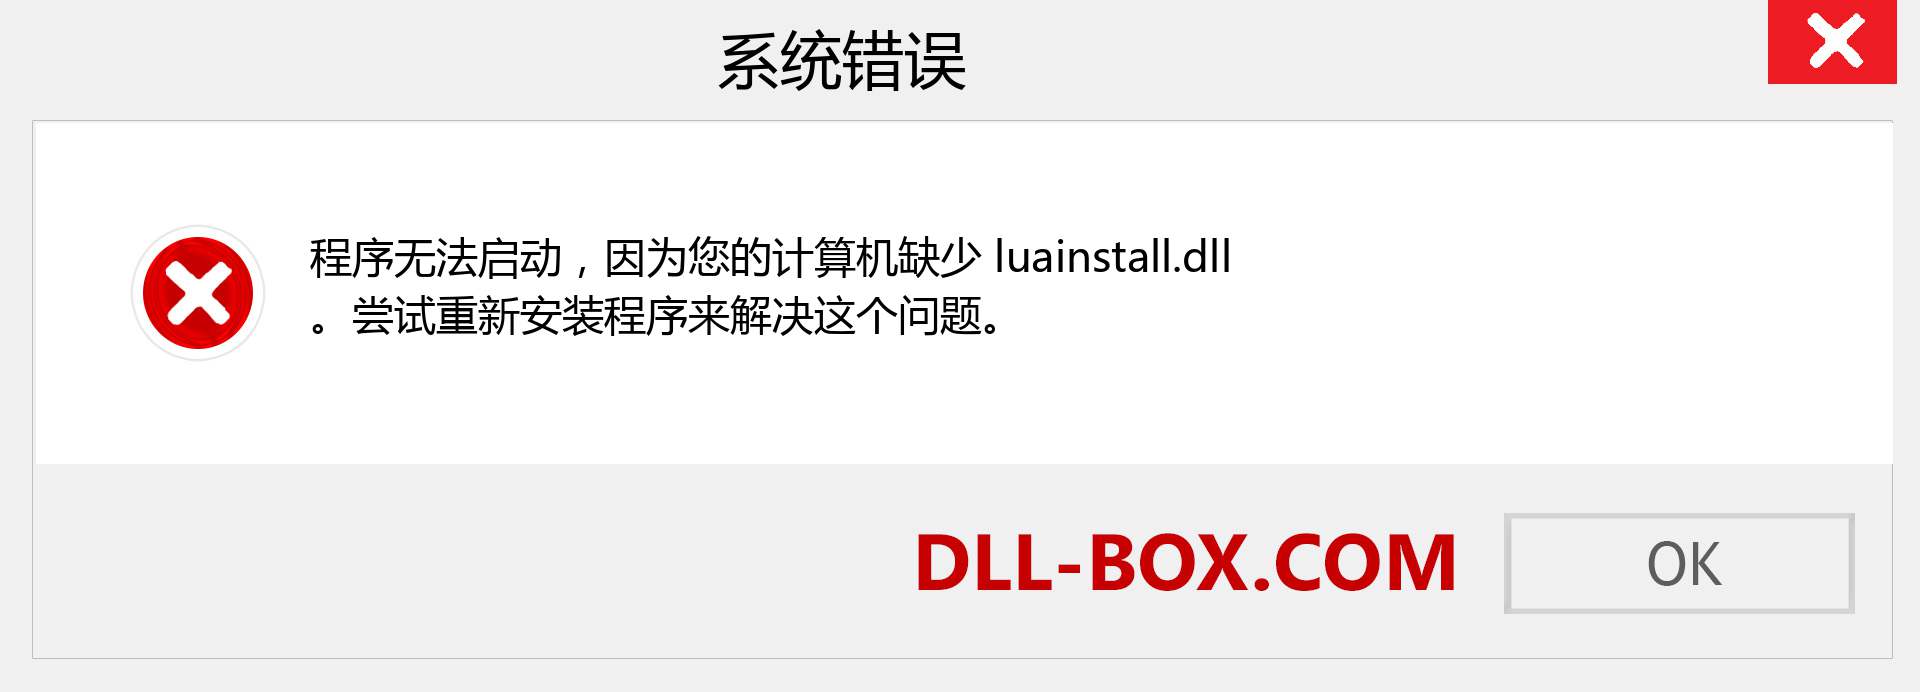 luainstall.dll 文件丢失？。 适用于 Windows 7、8、10 的下载 - 修复 Windows、照片、图像上的 luainstall dll 丢失错误